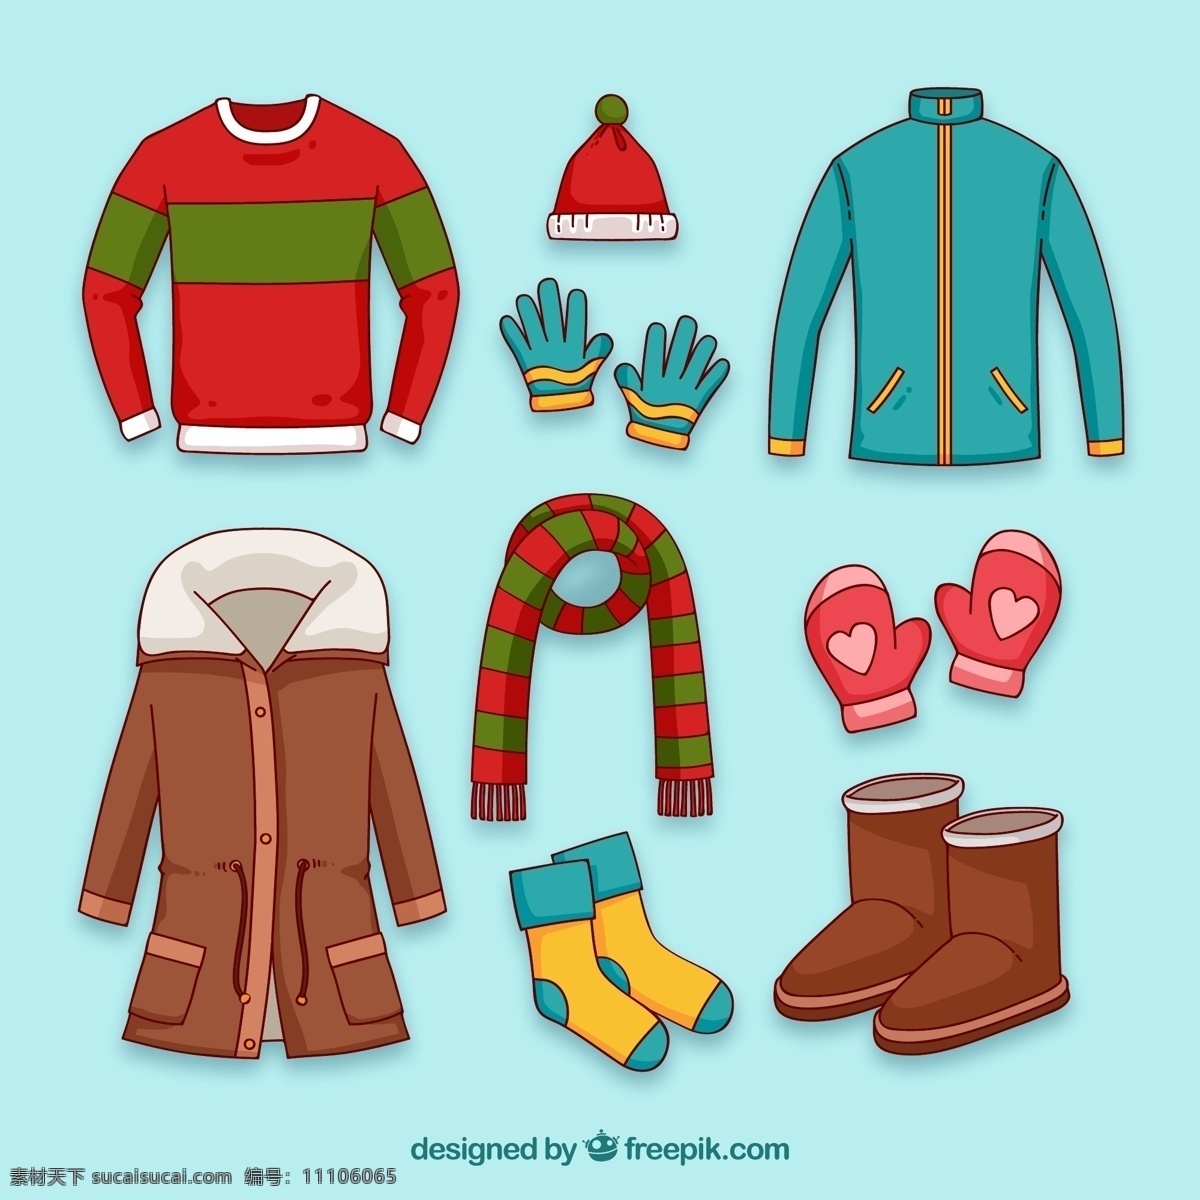 彩色 冬季 服装 配饰 毛衣 毛线帽 手套 节日 生活百科 生活用品